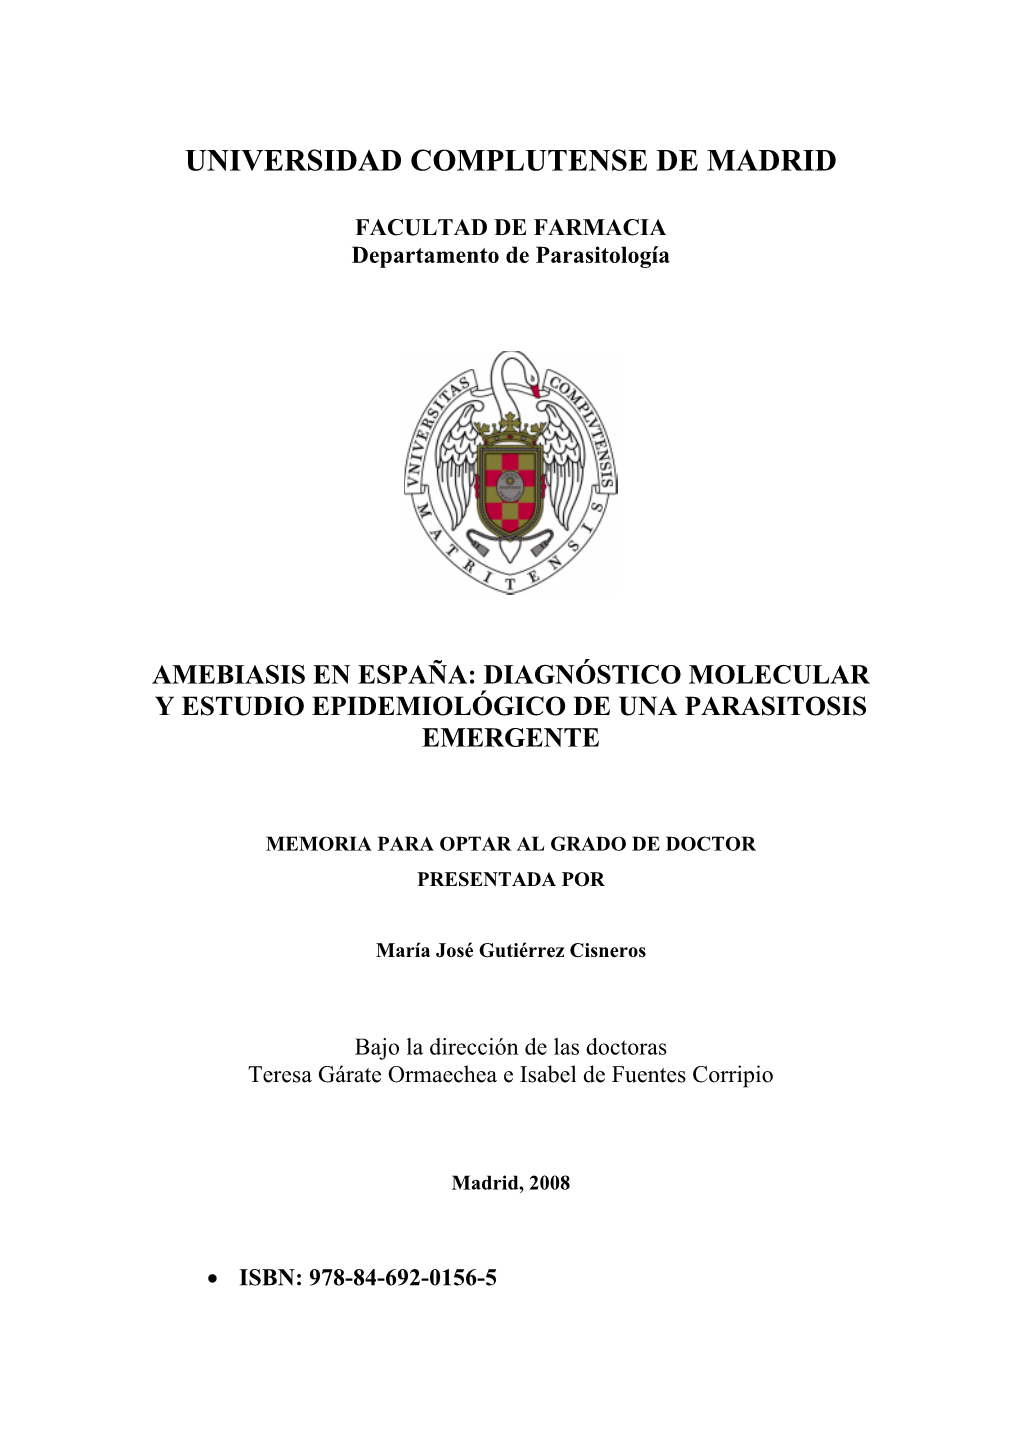 Amebiasis En España: Diagnóstico Molecular Y Estudio Epidemiológico De Una Parasitosis Emergente